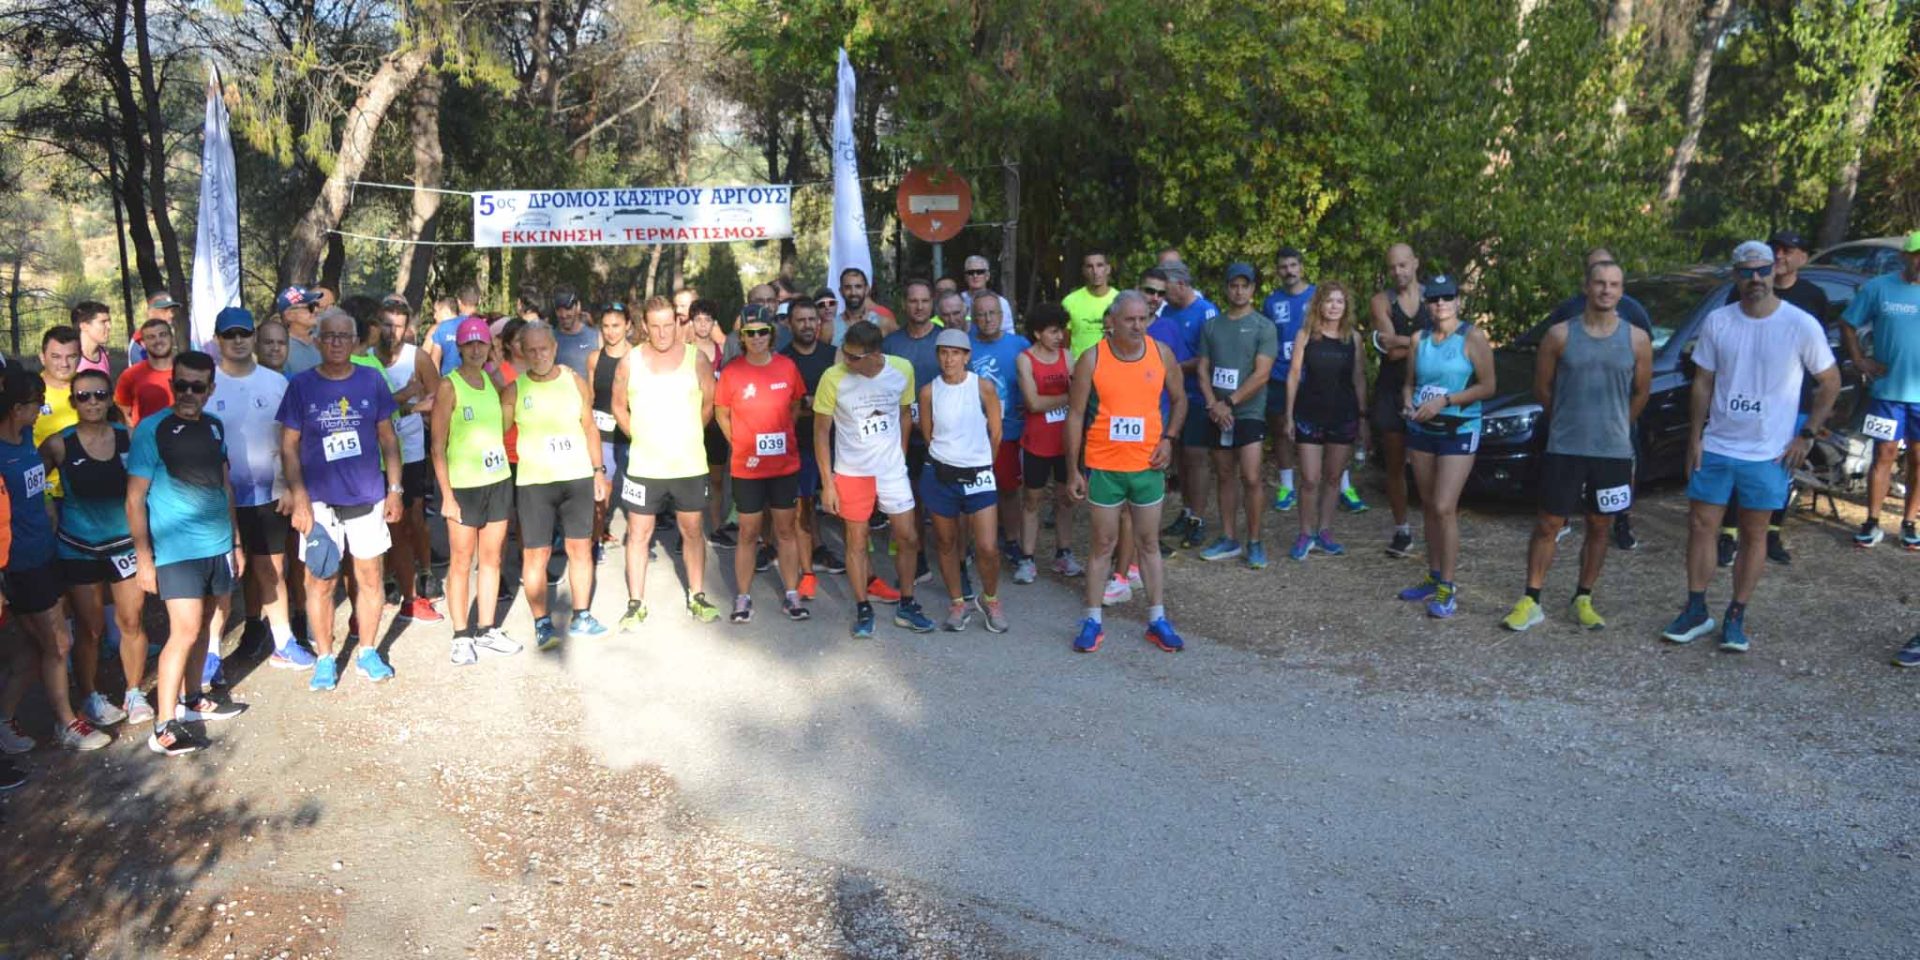 Άργος: Έτρεξαν από την Αρχαία Δειράδα στη Λάρισα (Εικόνες)